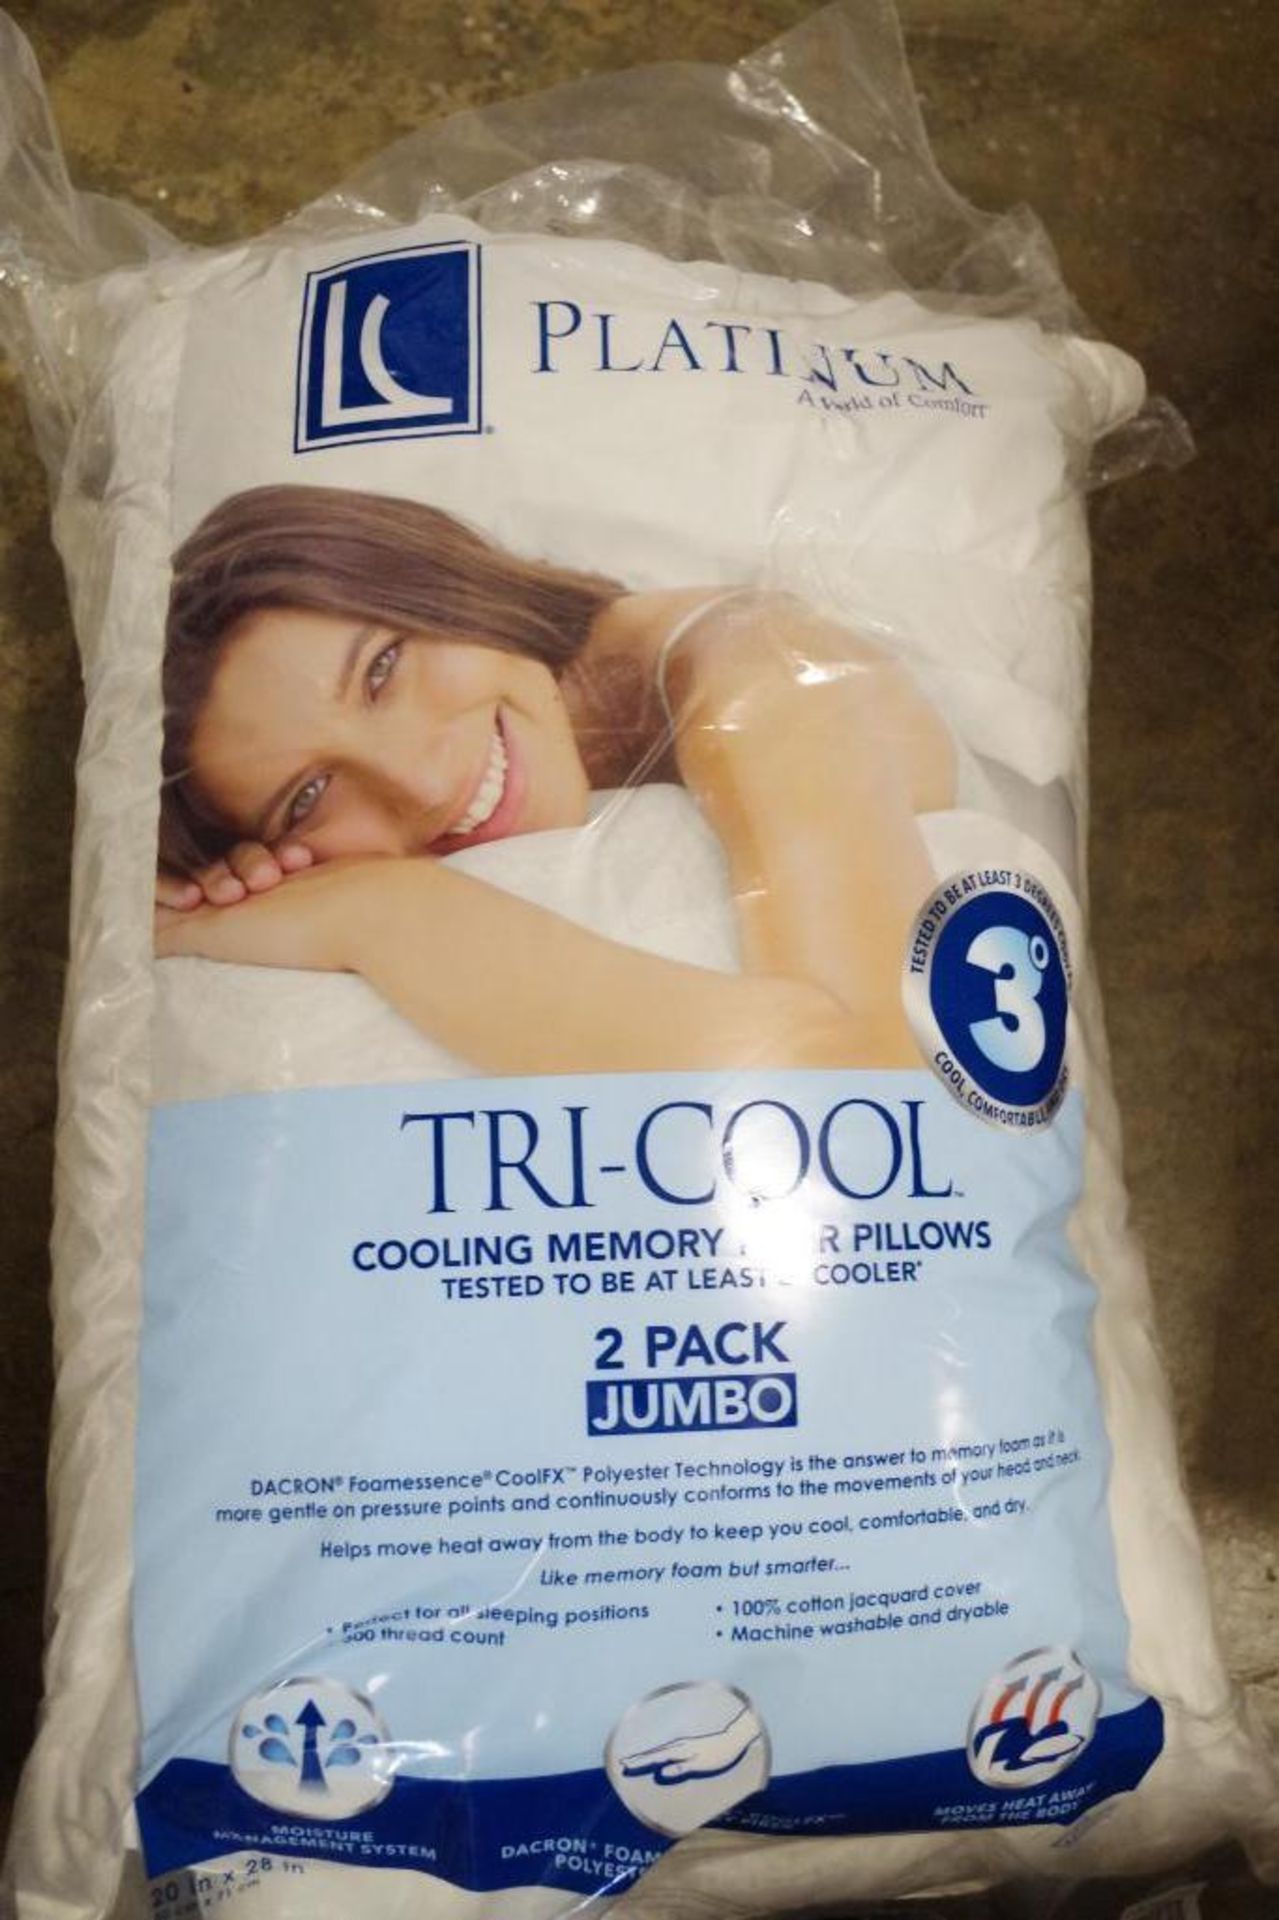 Platinum Jumbo Tri-Cool Cooling Memory Fiber Pillows (1 Pack of 2), Store Return - Image 2 of 4